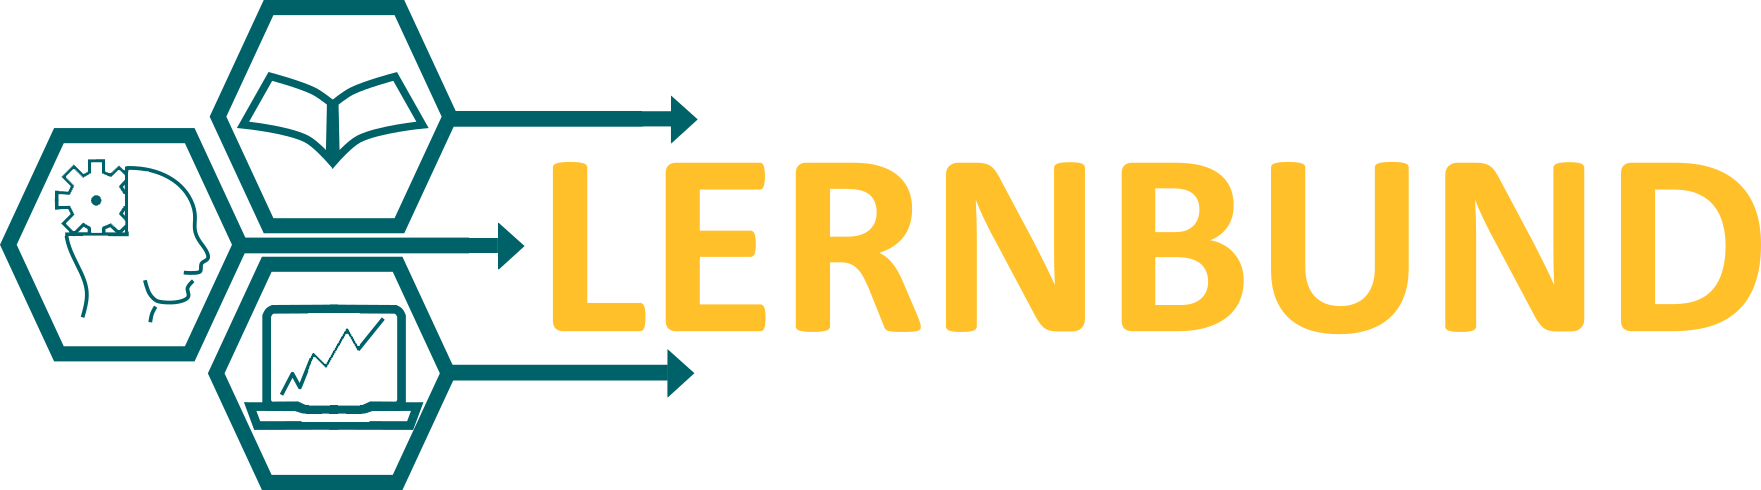 cropped-logo_lernbund_web-1-png